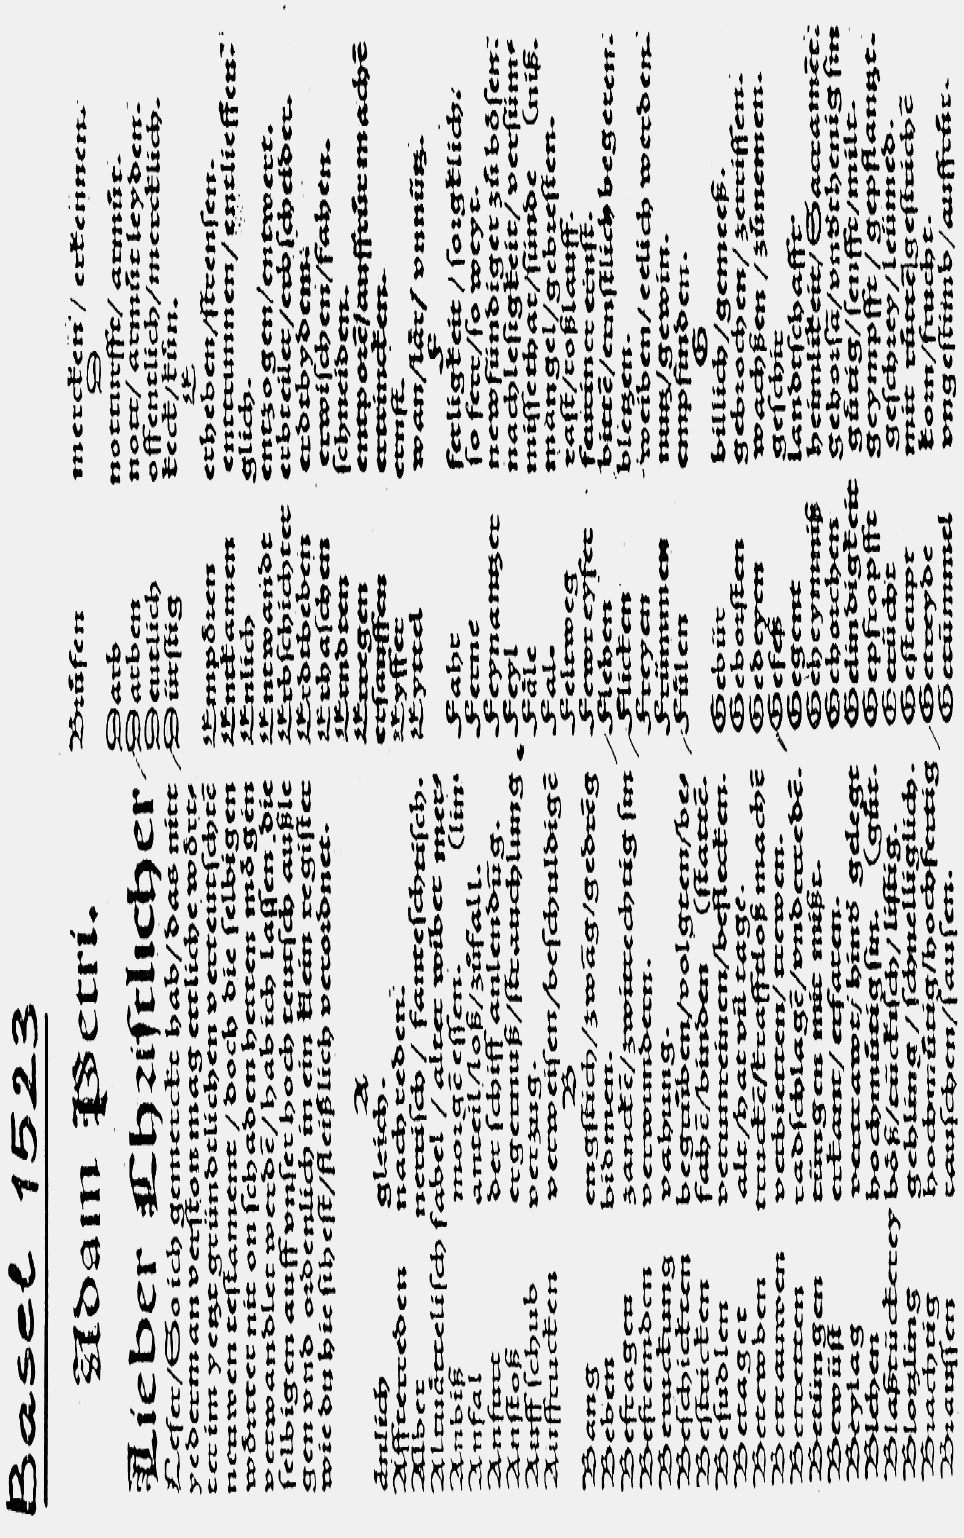 Universität Leipzig Blatt 7 Anfänge einer regional orientierten Sprachbeschreibung Schon 1523 war die Basler Ausgabe von Luthers Septemberbibel durch den Drucker Adam Petri mit einem der ersten